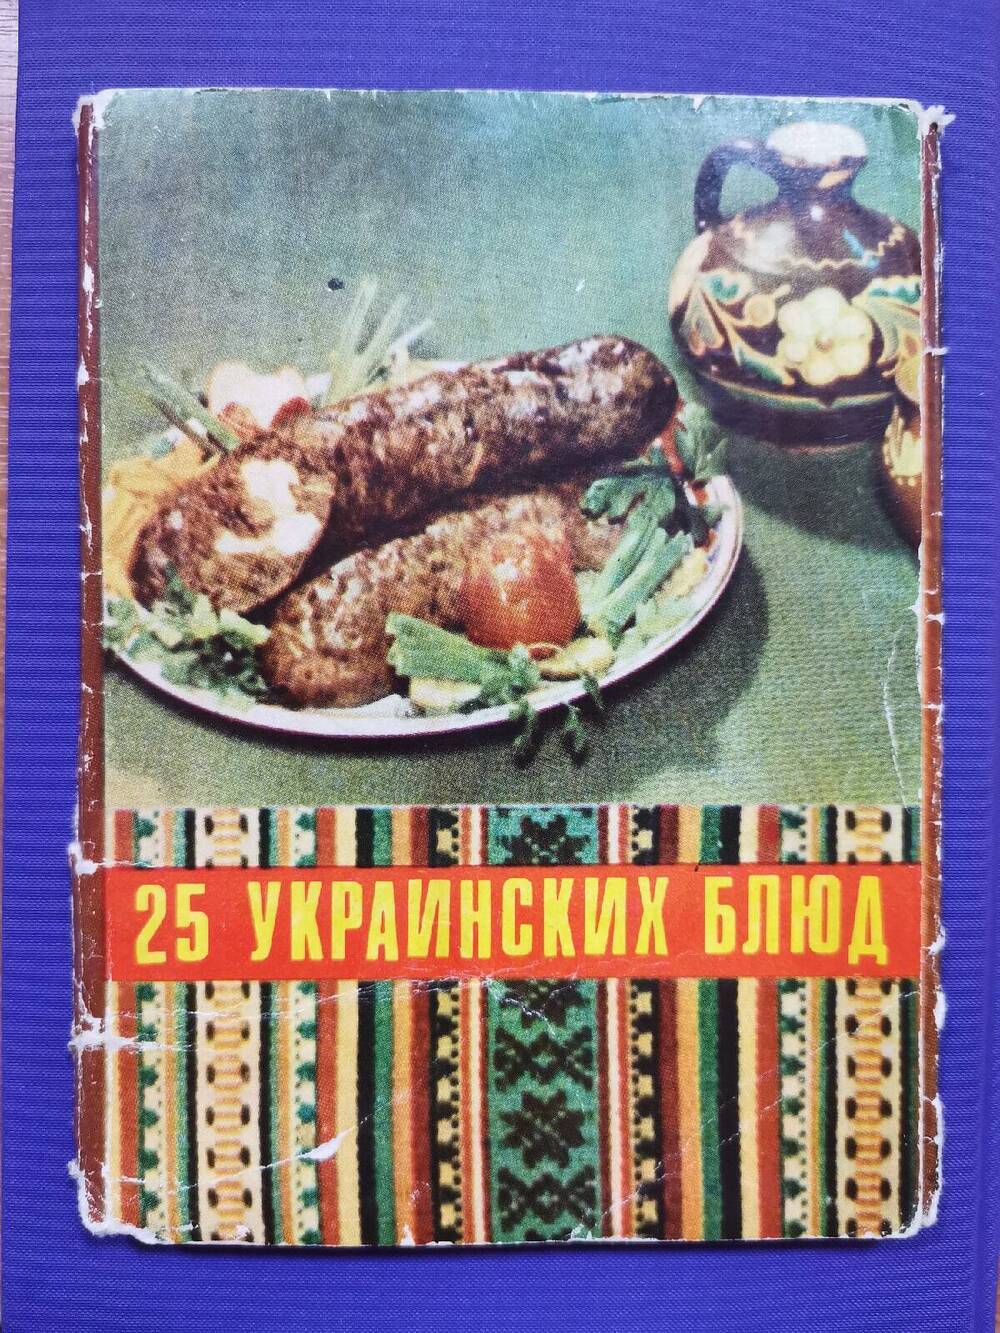 Комплект открыток «25 украинских блюд». Обложка